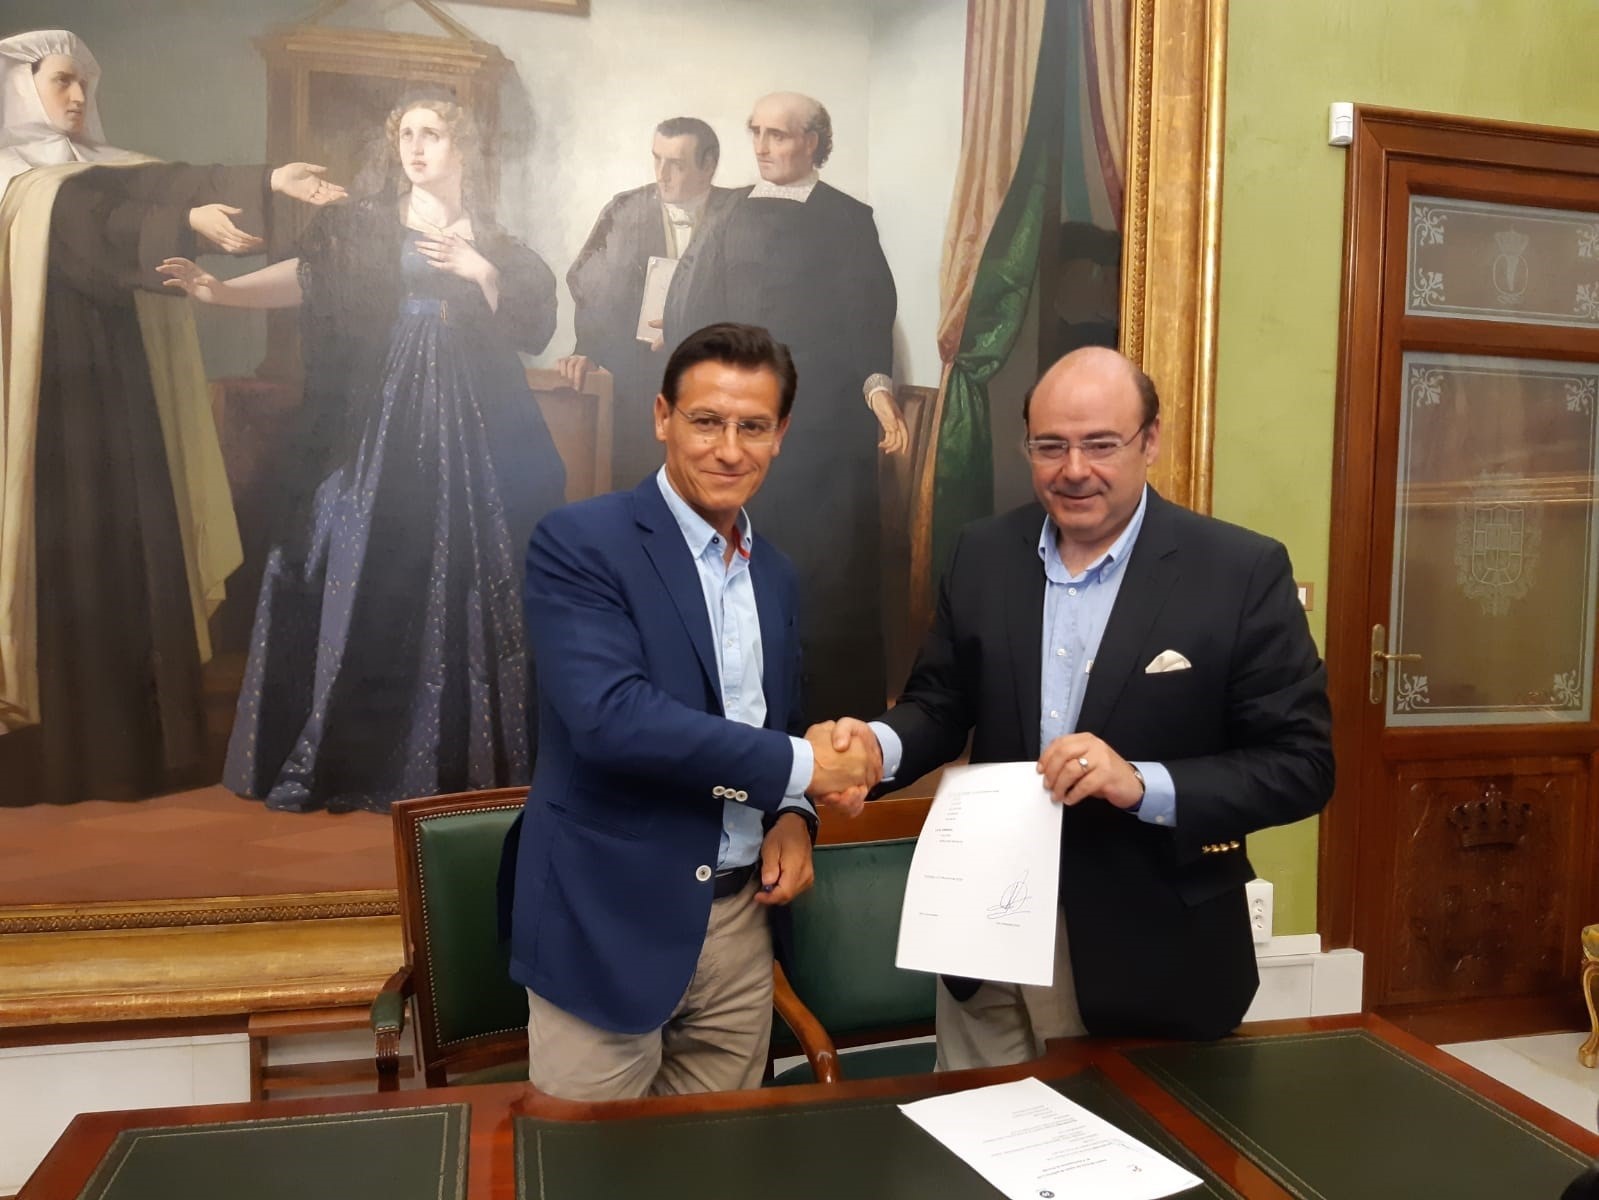 Sebastián Pérez renuncia a sus cargos en el bipartito de PP y Cs en Granada pero mantiene el acta de concejal